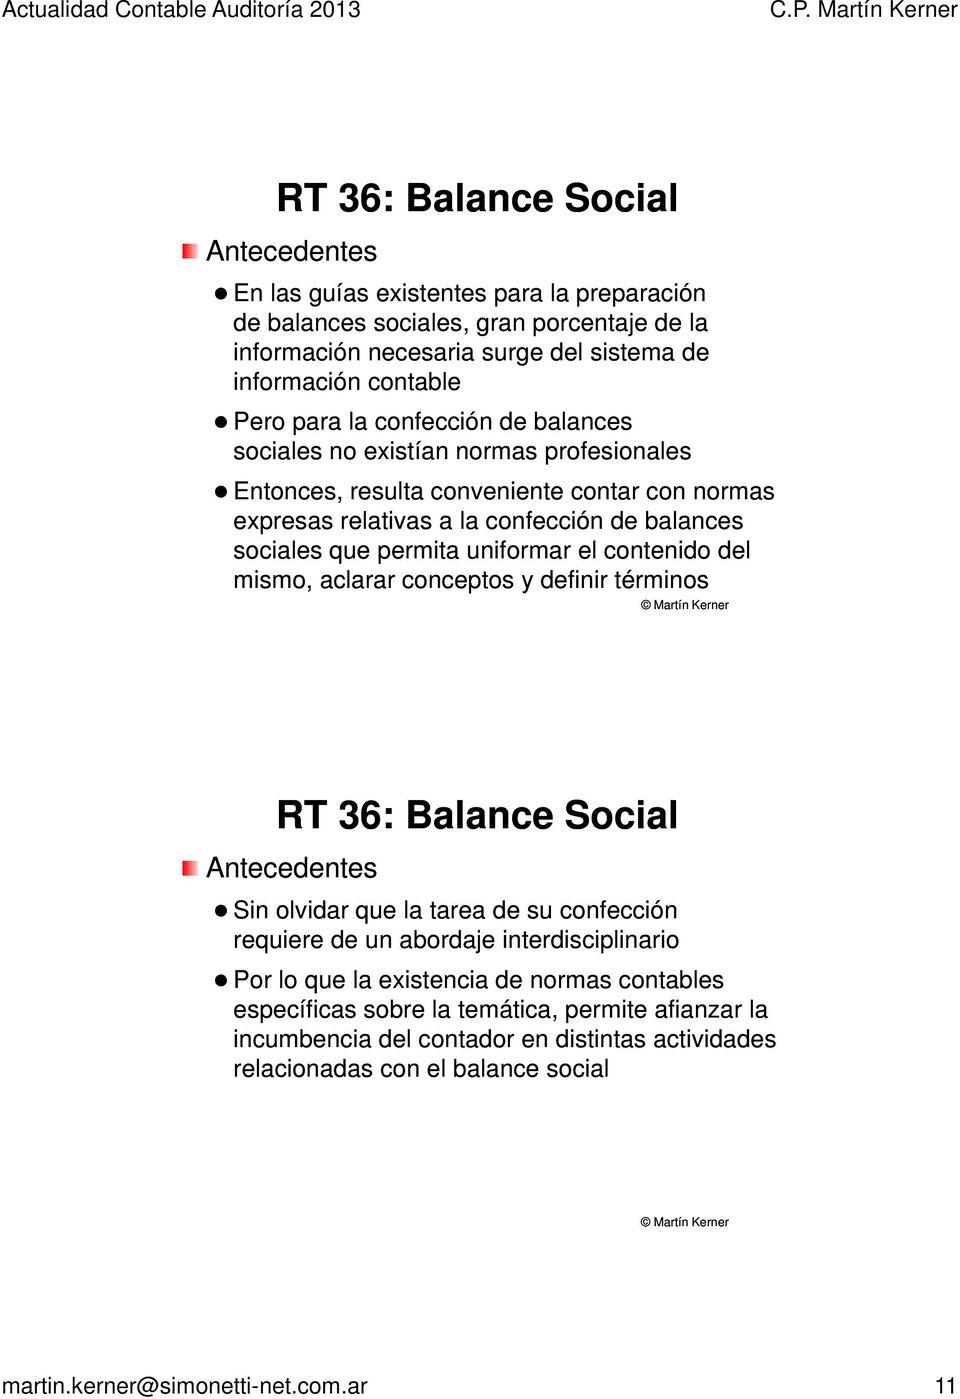 contenido del mismo, aclarar conceptos y definir términos RT 36: Balance Social Antecedentes Sin olvidar que la tarea de su confección requiere de un abordaje interdisciplinario Por lo que la